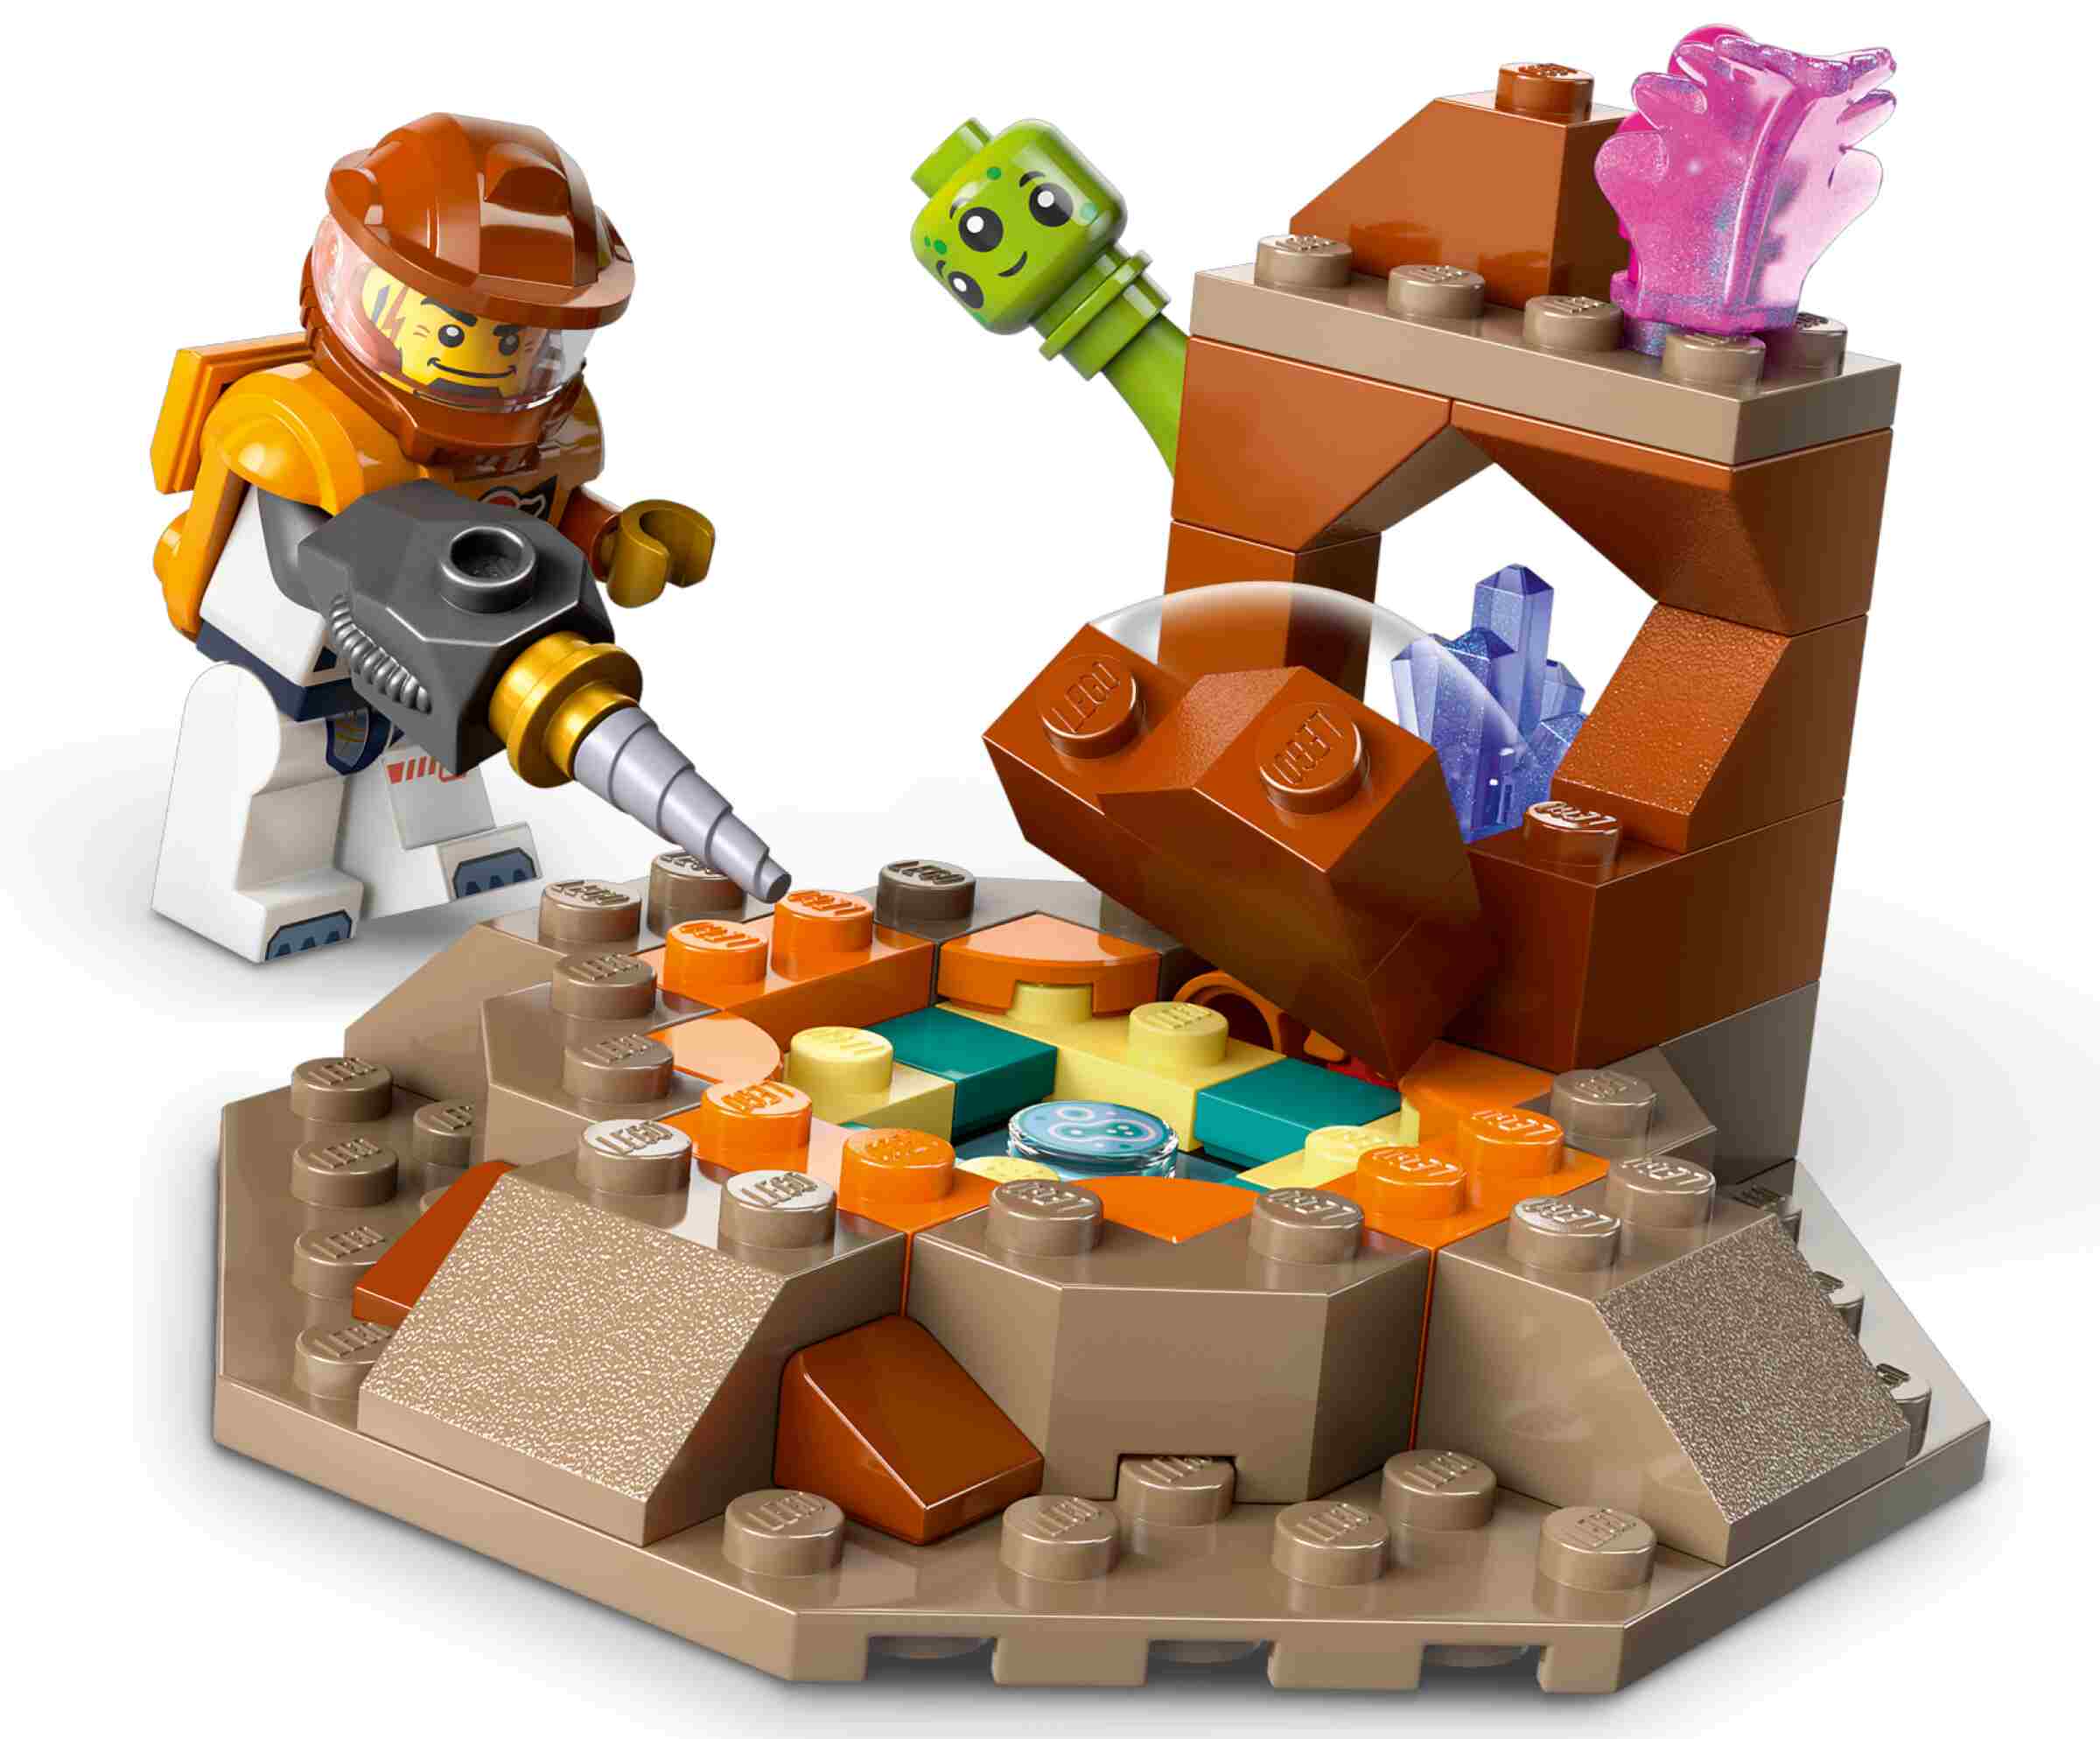 LEGO 60434 City Raumbasis mit Startrampe, 6 Minifiguren, Roboter und 2 Aliens